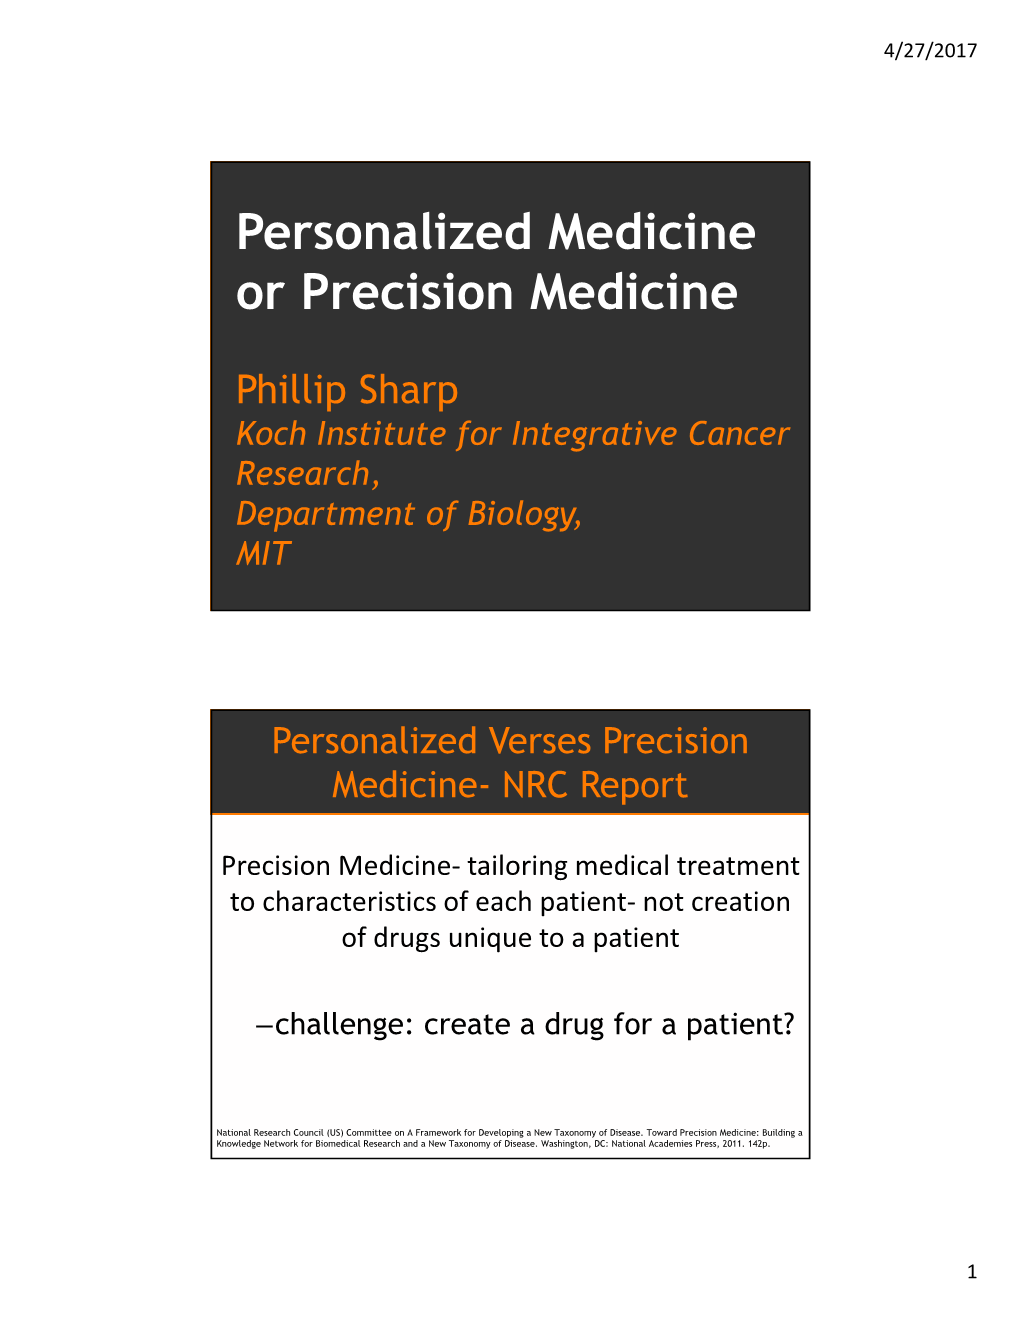 Personalized Medicine Or Precision Medicine